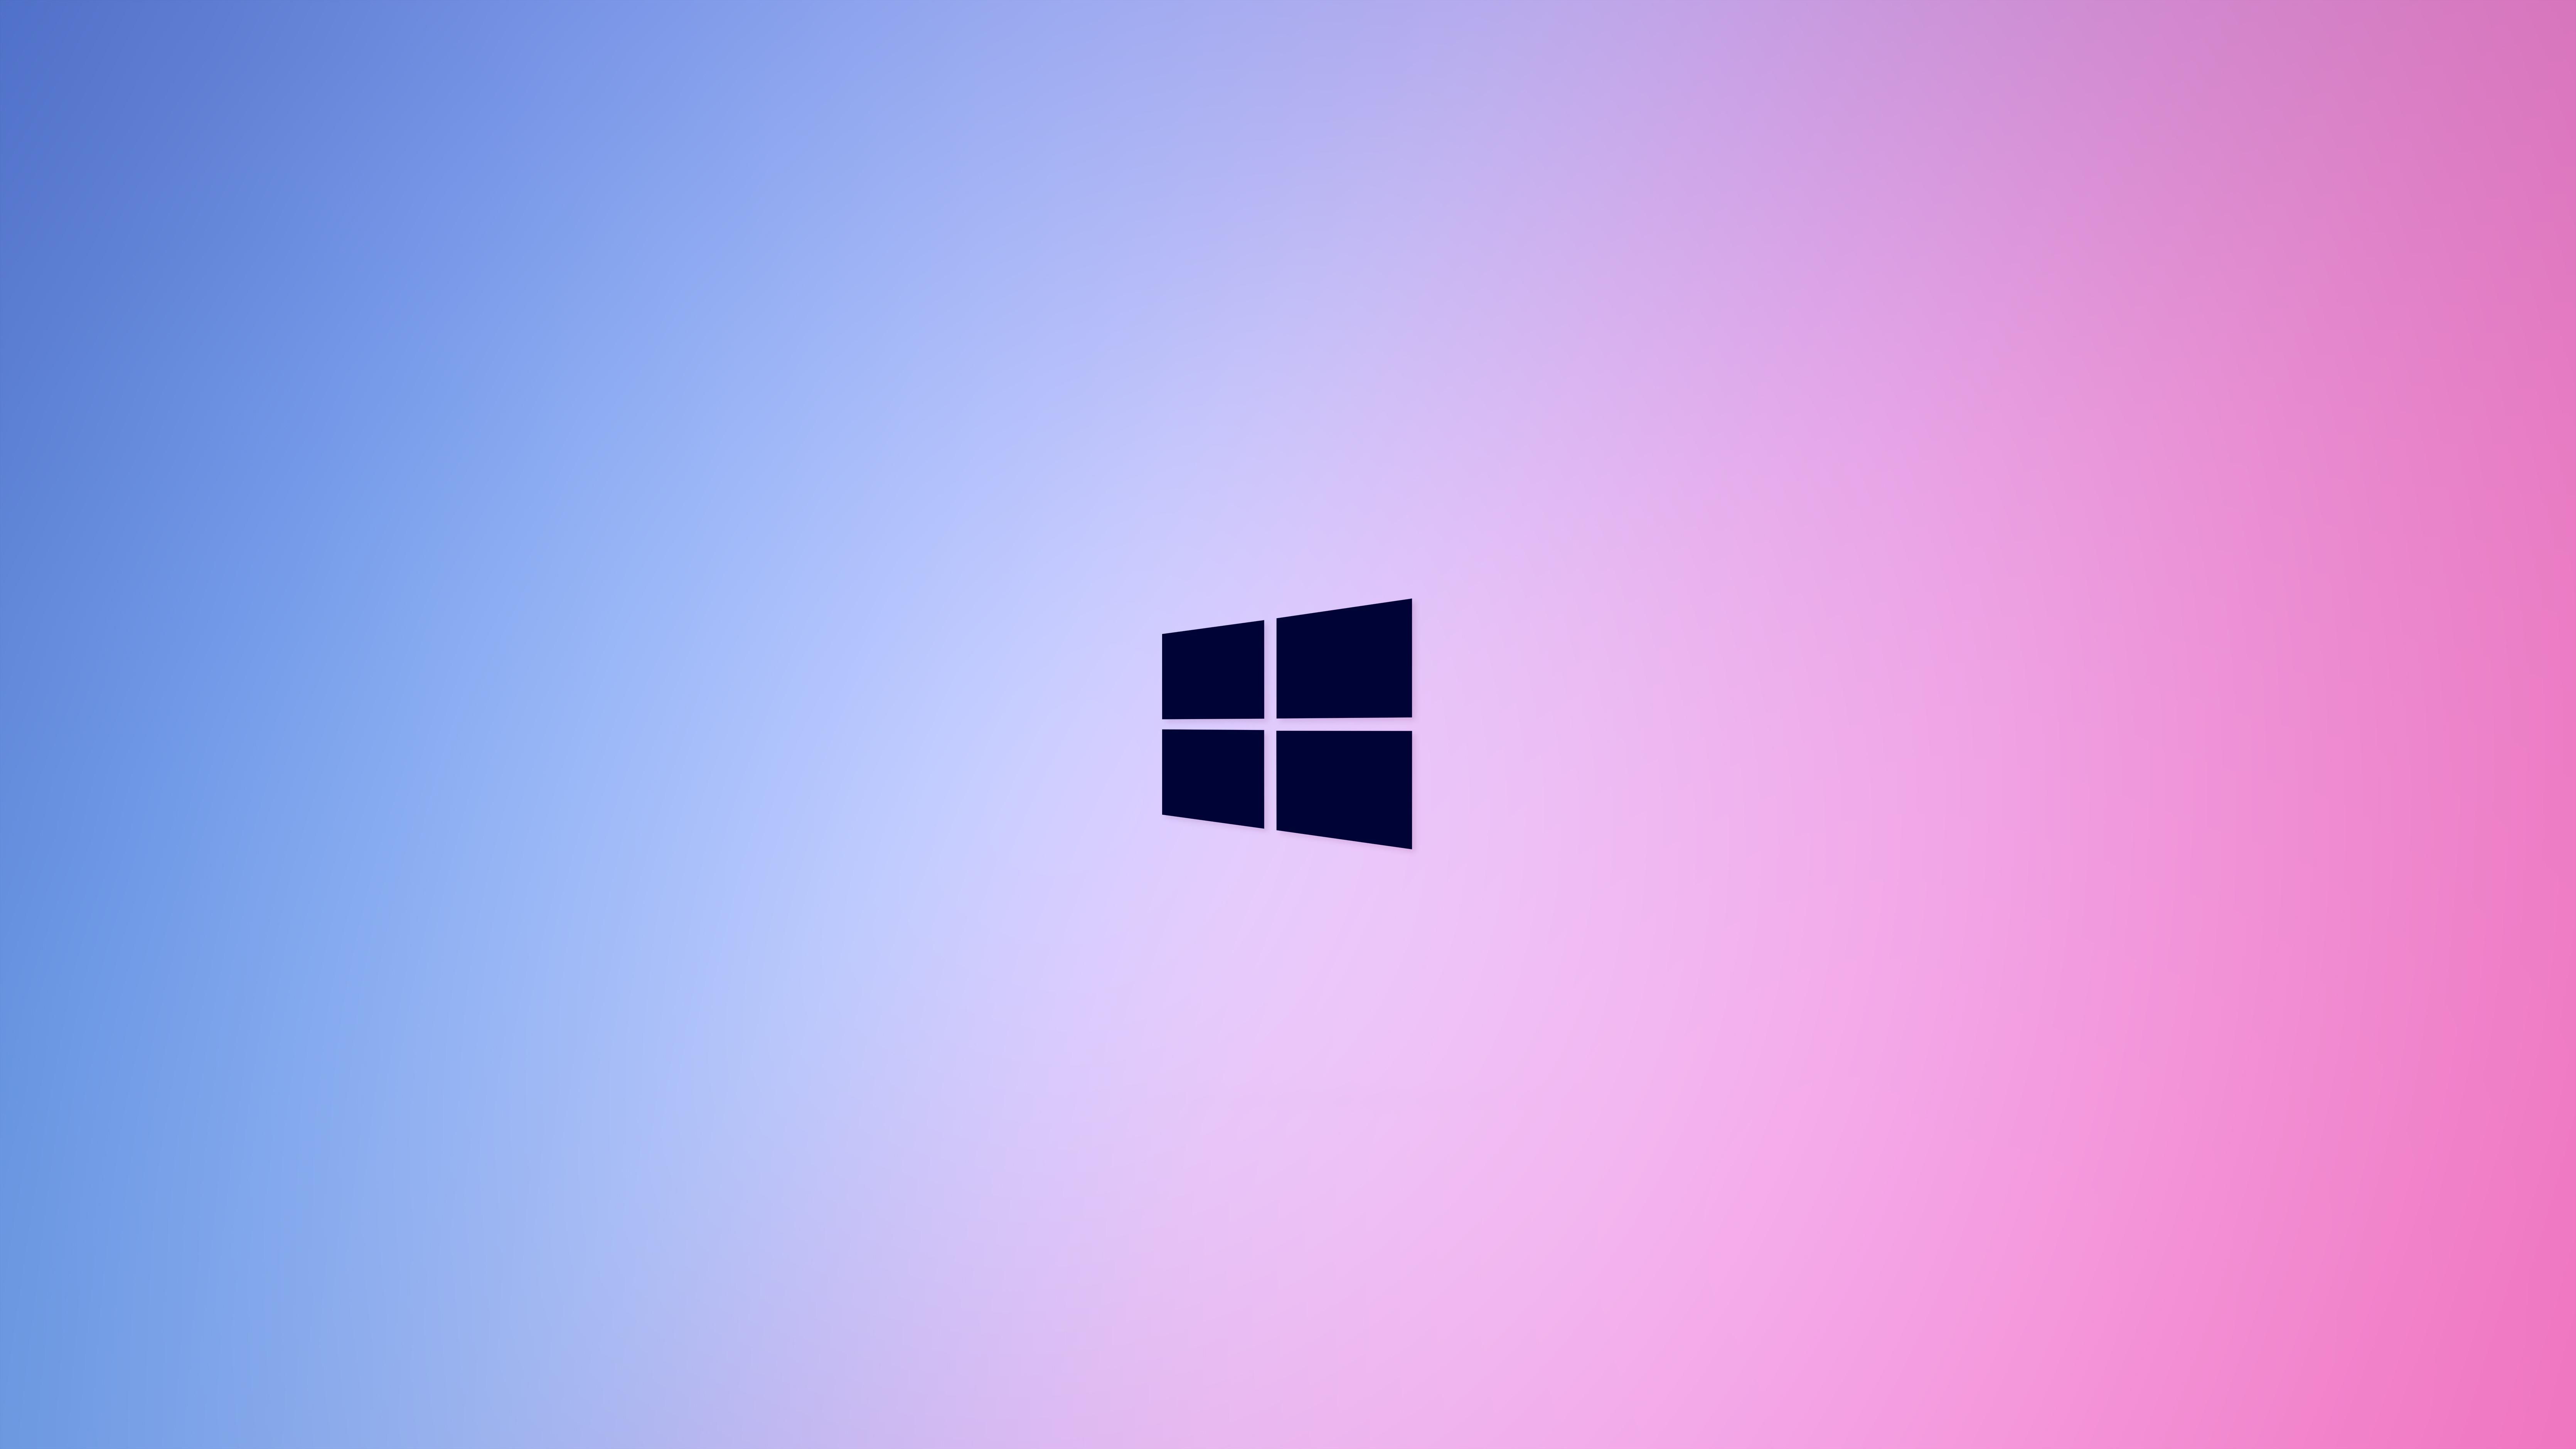 Các bạn thích màu hồng và đang sử dụng Windows 10? Hãy thử ngay hình nền màu hồng Windows 10 tại Wallpaper Cave. Với hàng trăm tùy chọn, bạn sẽ không đủ thời gian để xem hết. Bắt đầu trang trí máy tính của bạn và tạo cảm hứng cho ngày mới.